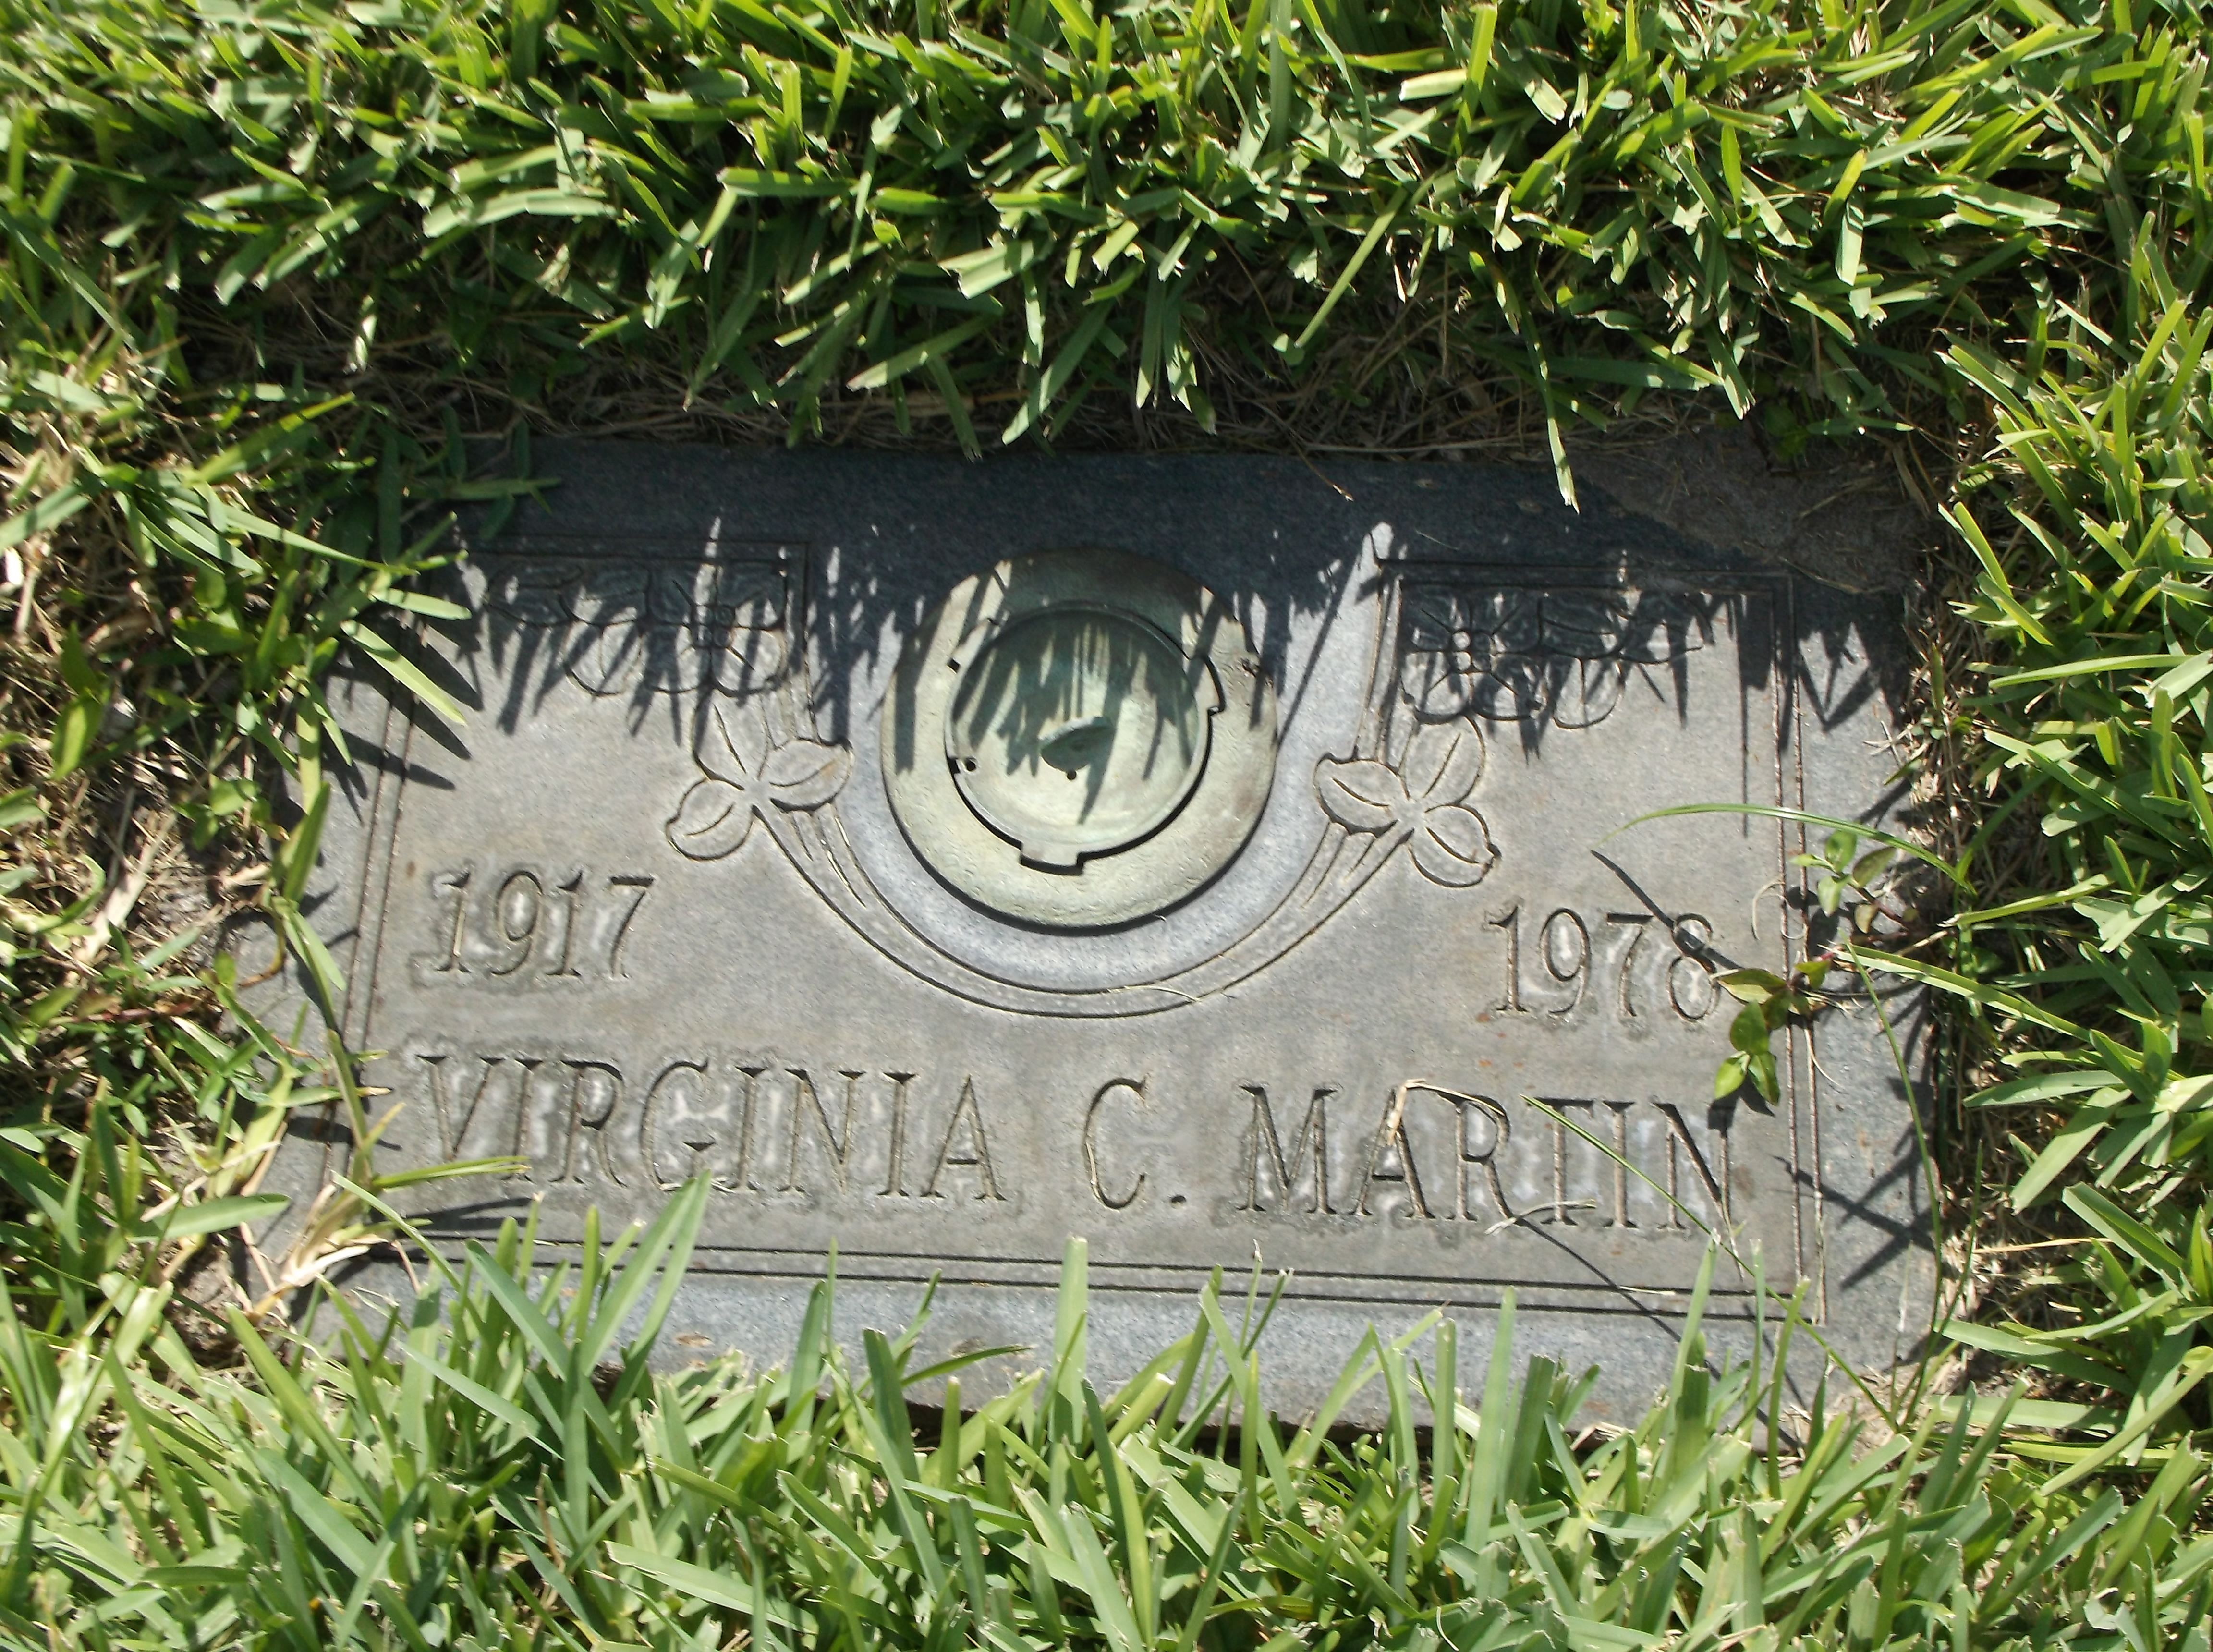 Virginia C Martin